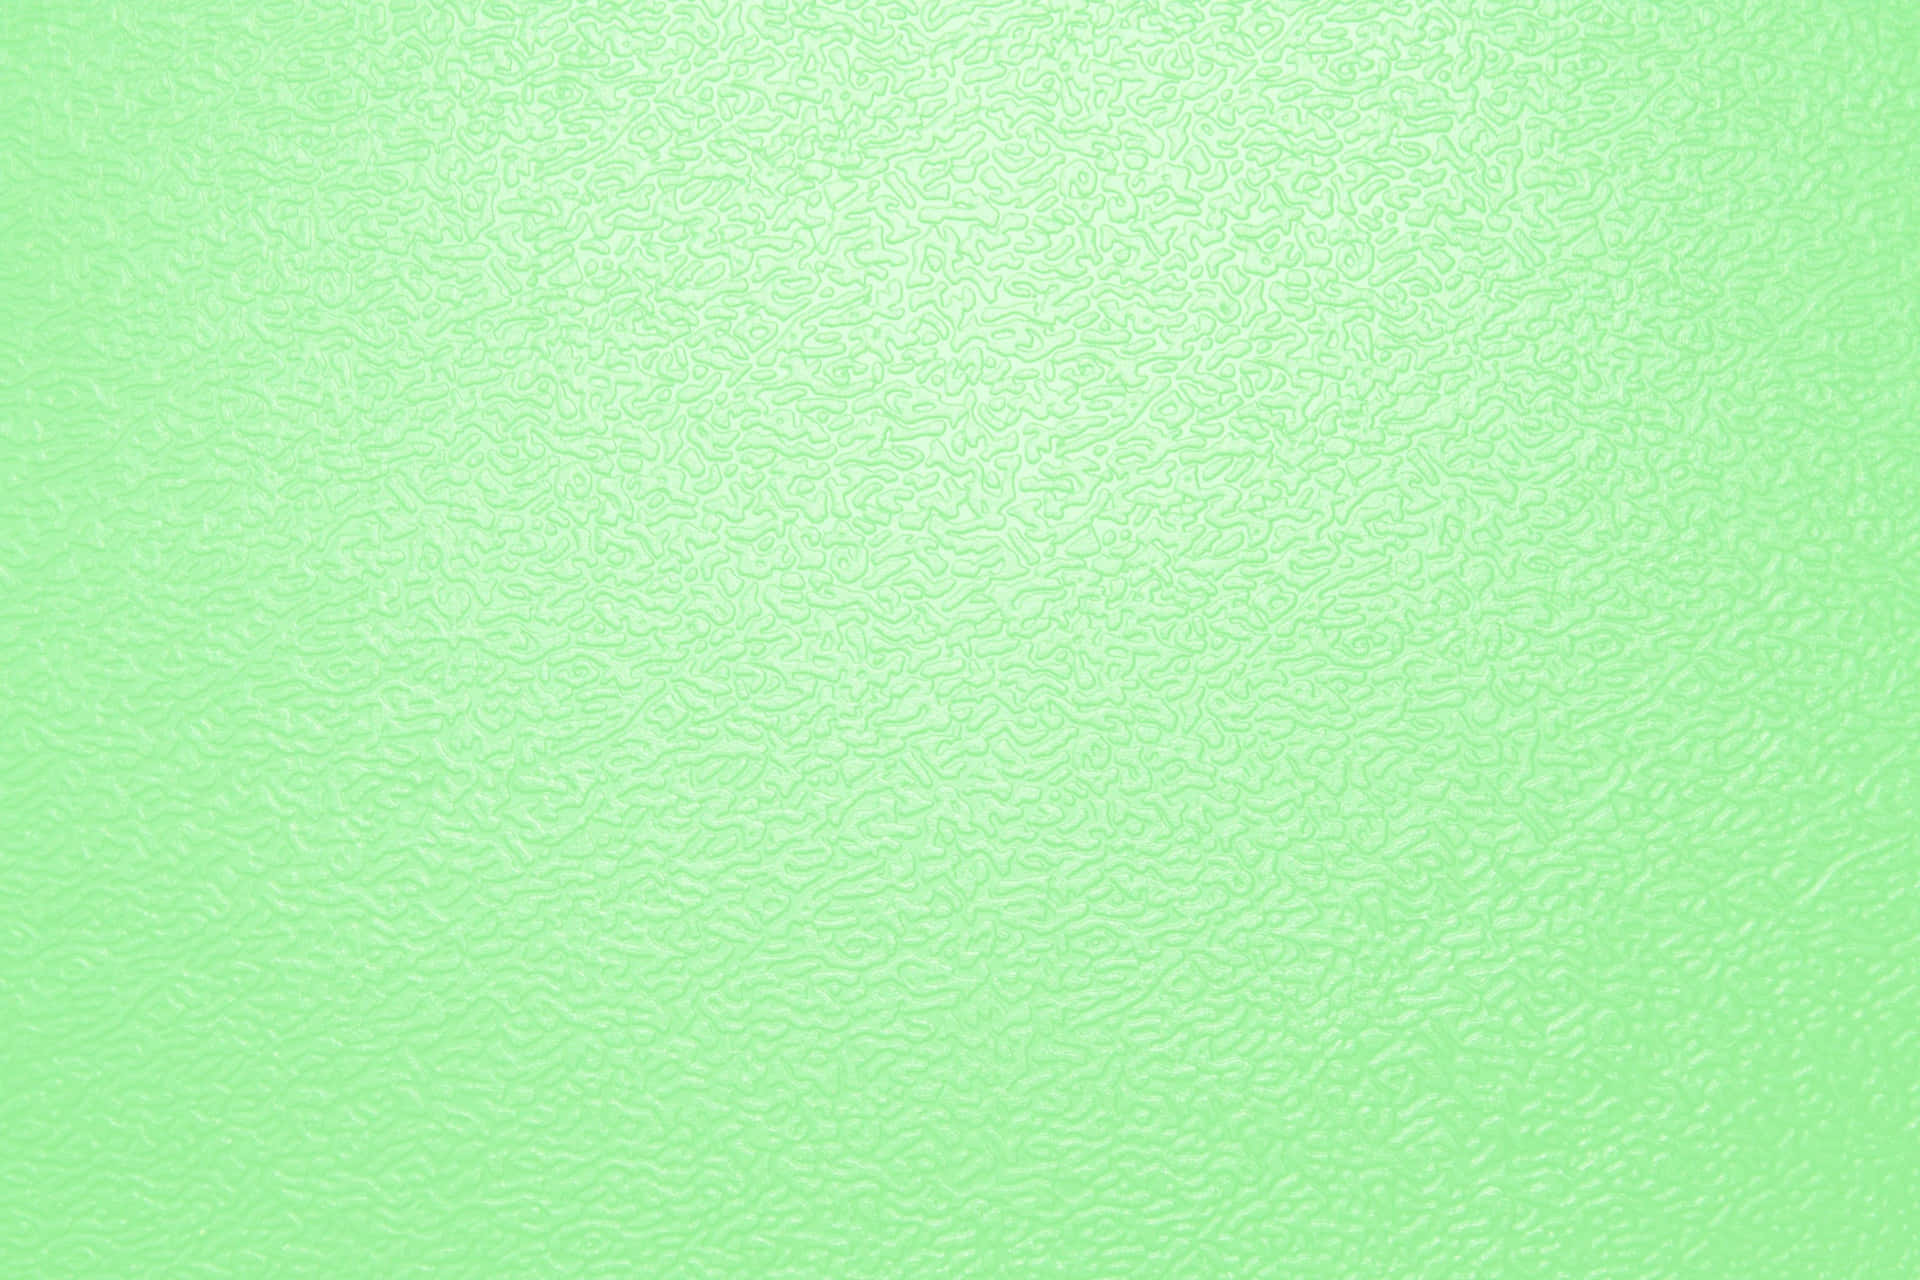 Vibrant Green Solid Color Wallpaper Wallpaper